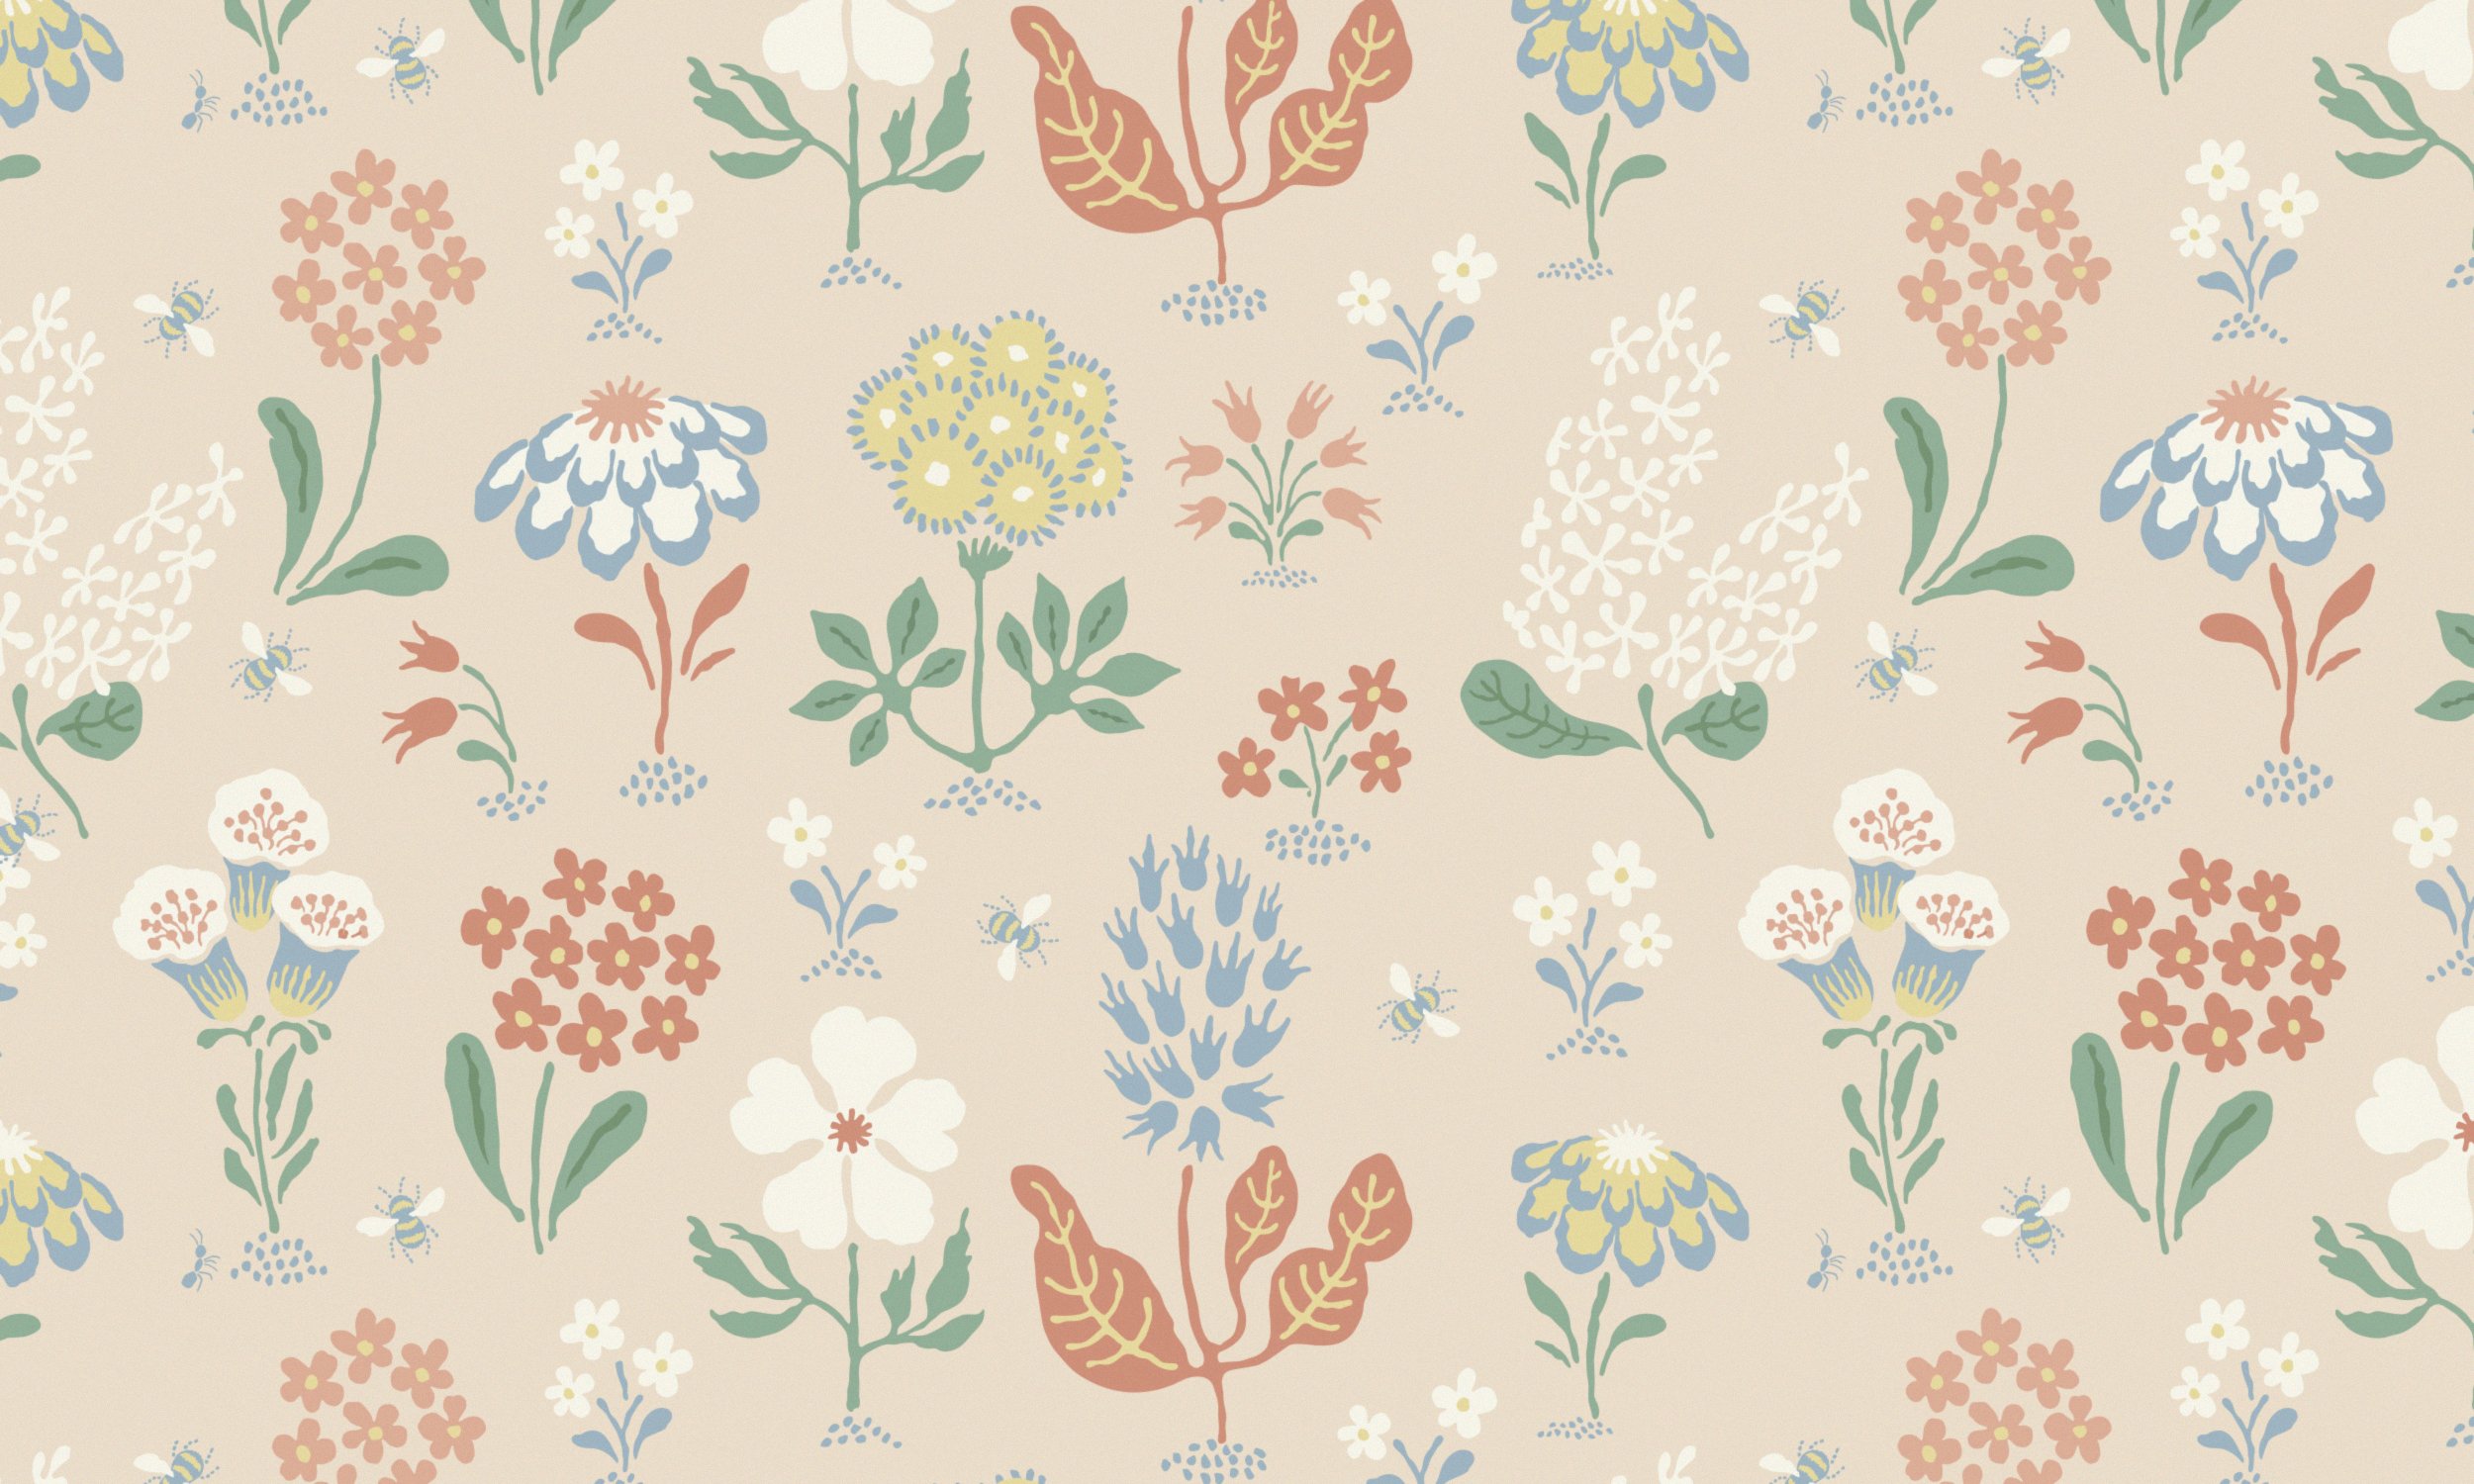 Camilla Lundsten WEB-A 2 Wildflowers Dustypink print.jpg